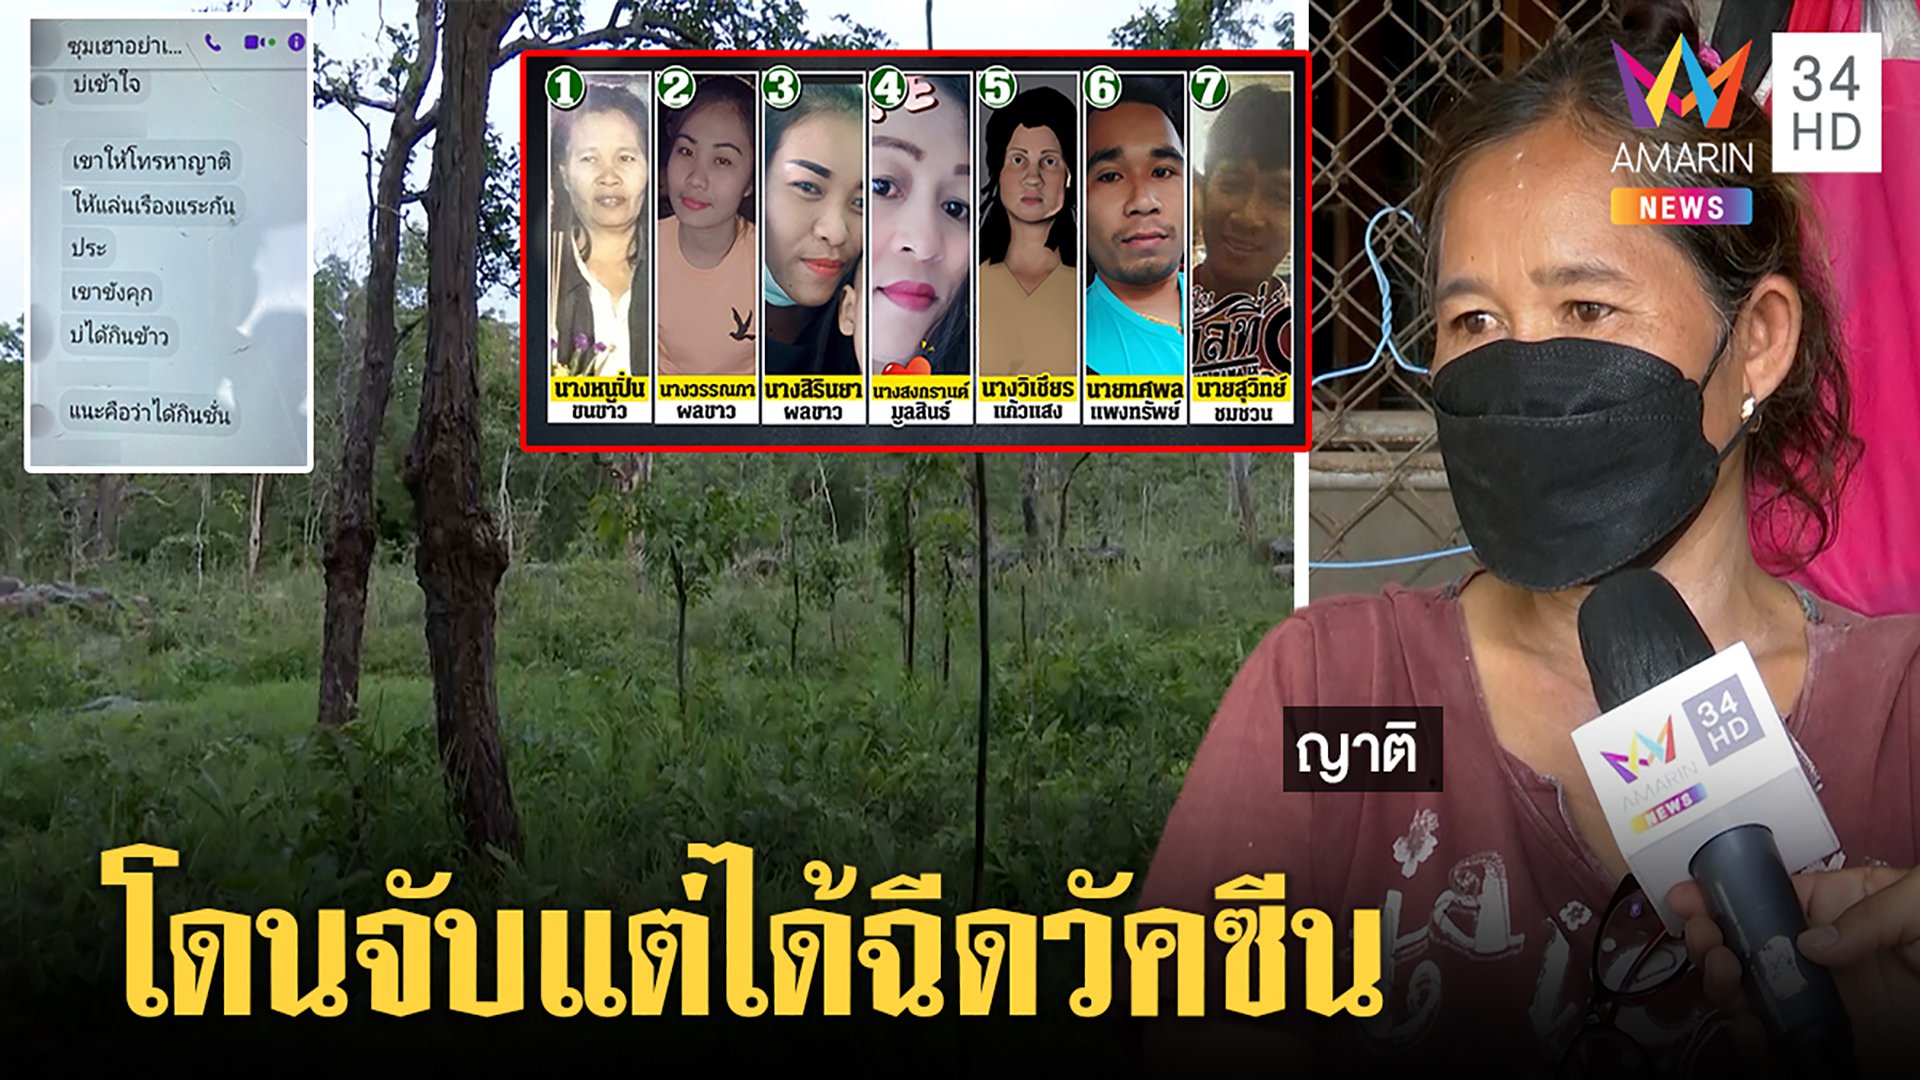 7 คนไทยหาเห็ดเพลินถูกทหารลาวคุมตัว จับฉีดวัคซีน mRNA ญาติจี้รัฐช่วย | ทุบโต๊ะข่าว | 2 ส.ค. 64 | AMARIN TVHD34